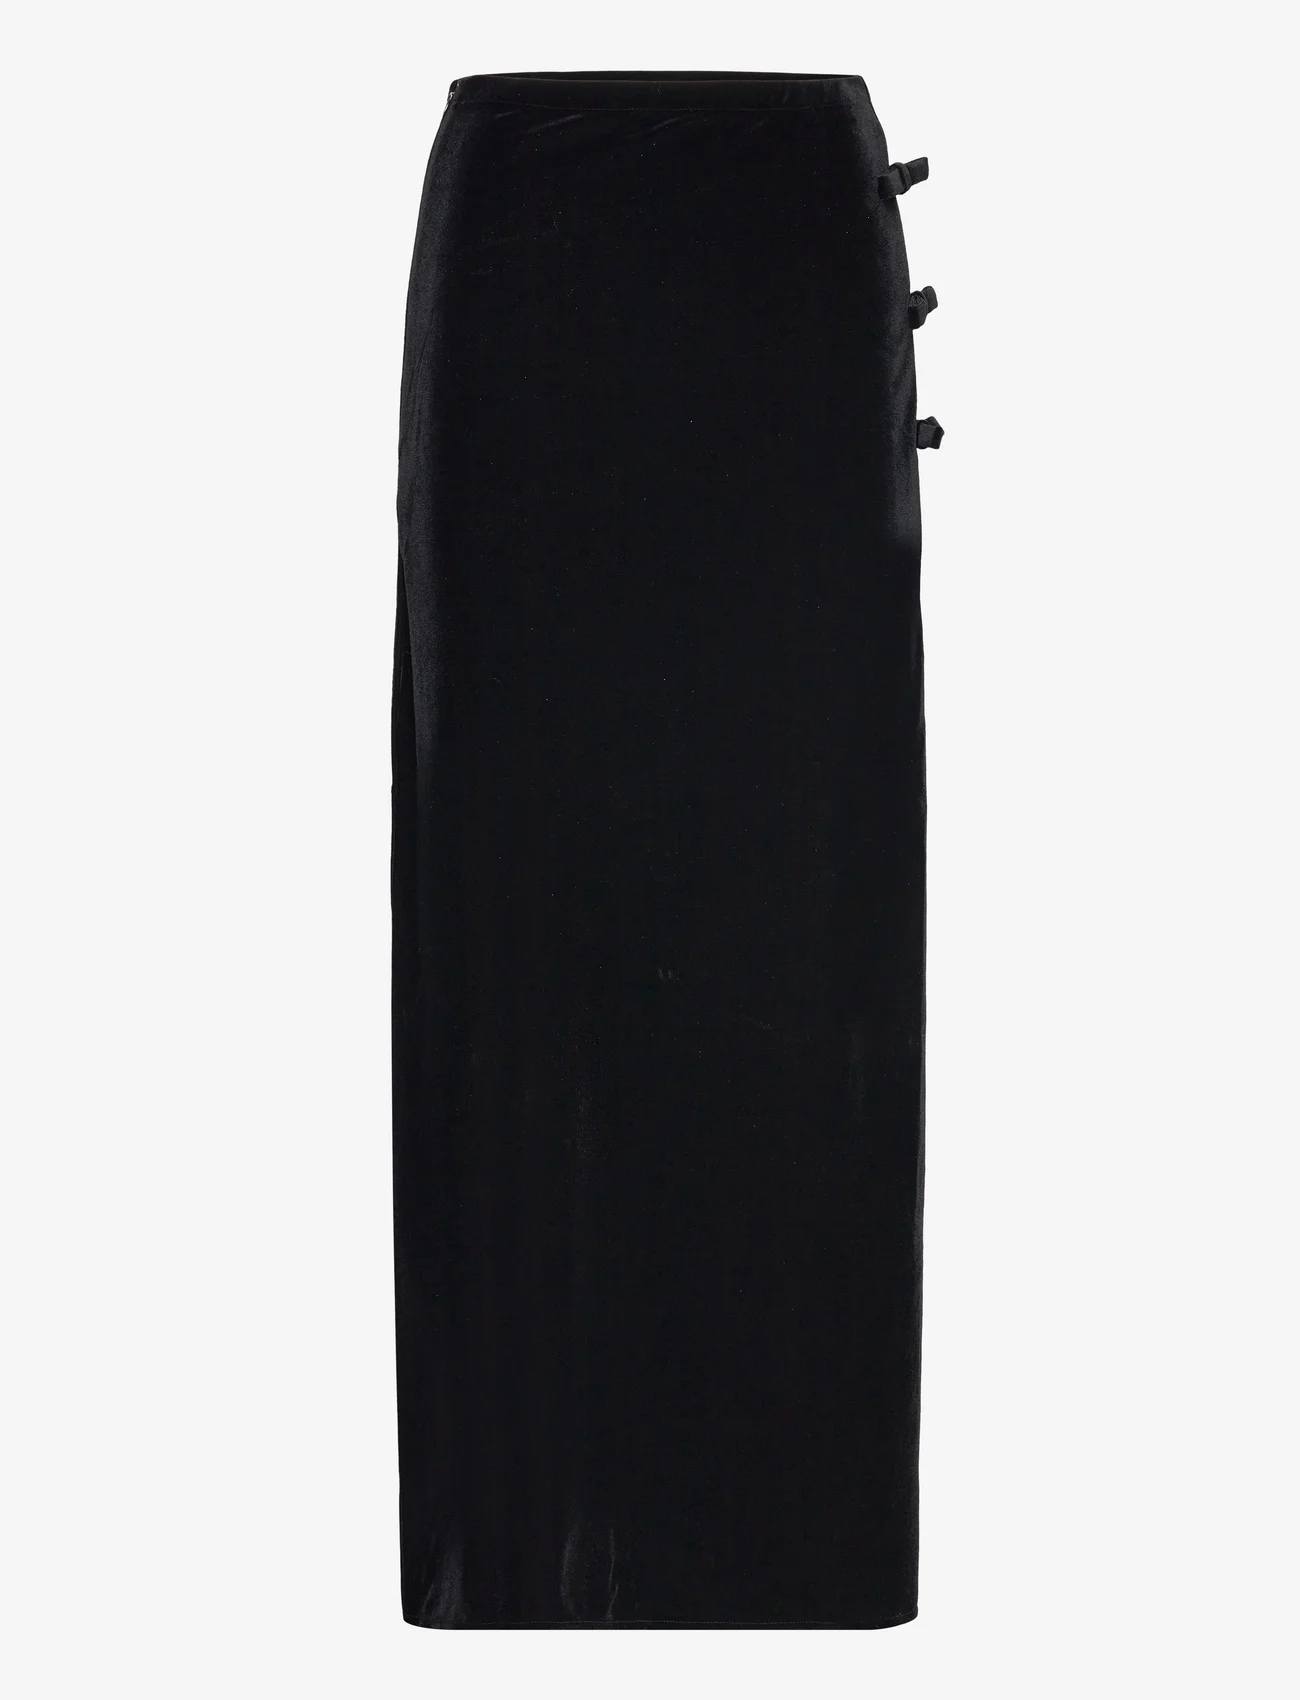 Ganni - Velvet Jersey - maxi skirts - black - 0